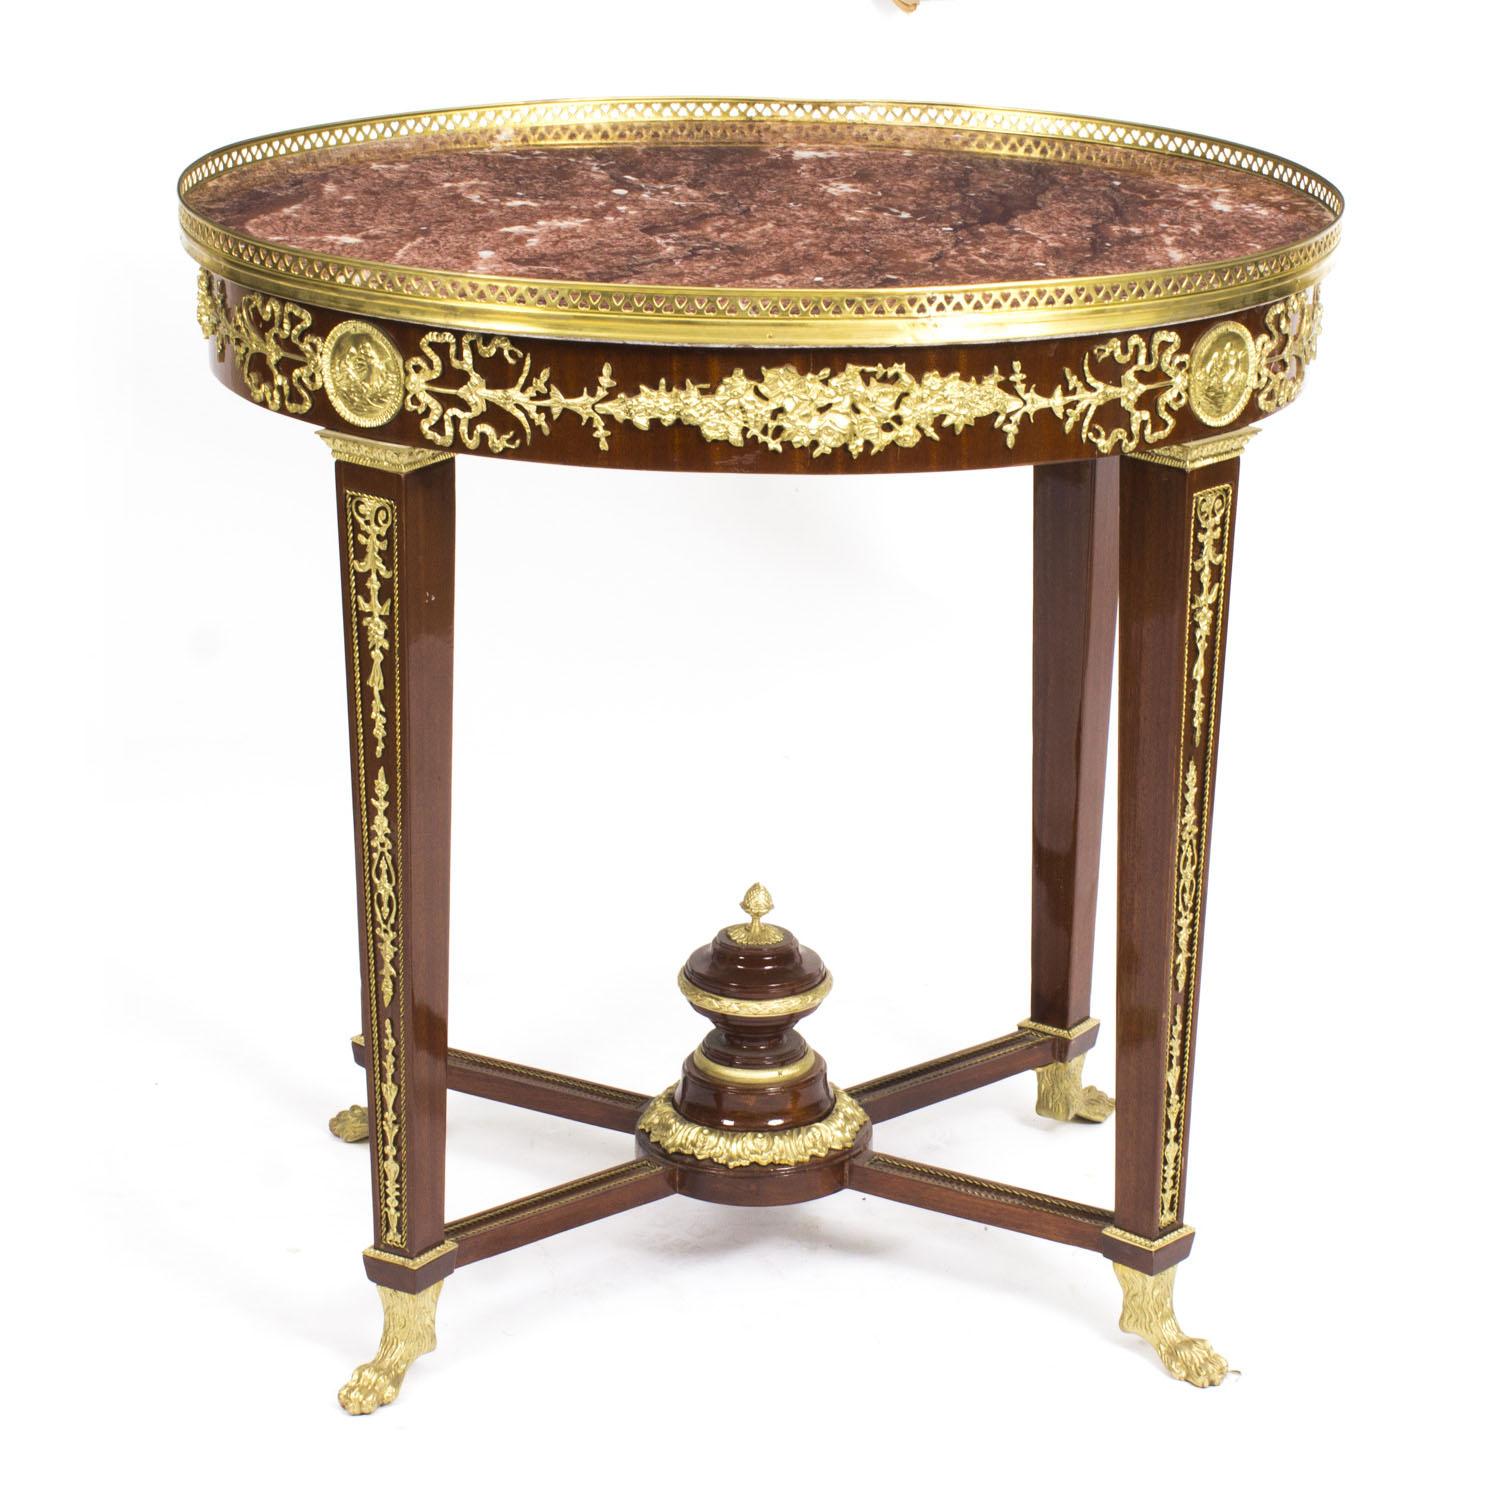 Il s'agit d'une belle table d'appoint de style néo-Empire avec une fabuleuse décoration en bronze doré typique de la période Empire et un plateau en marbre 